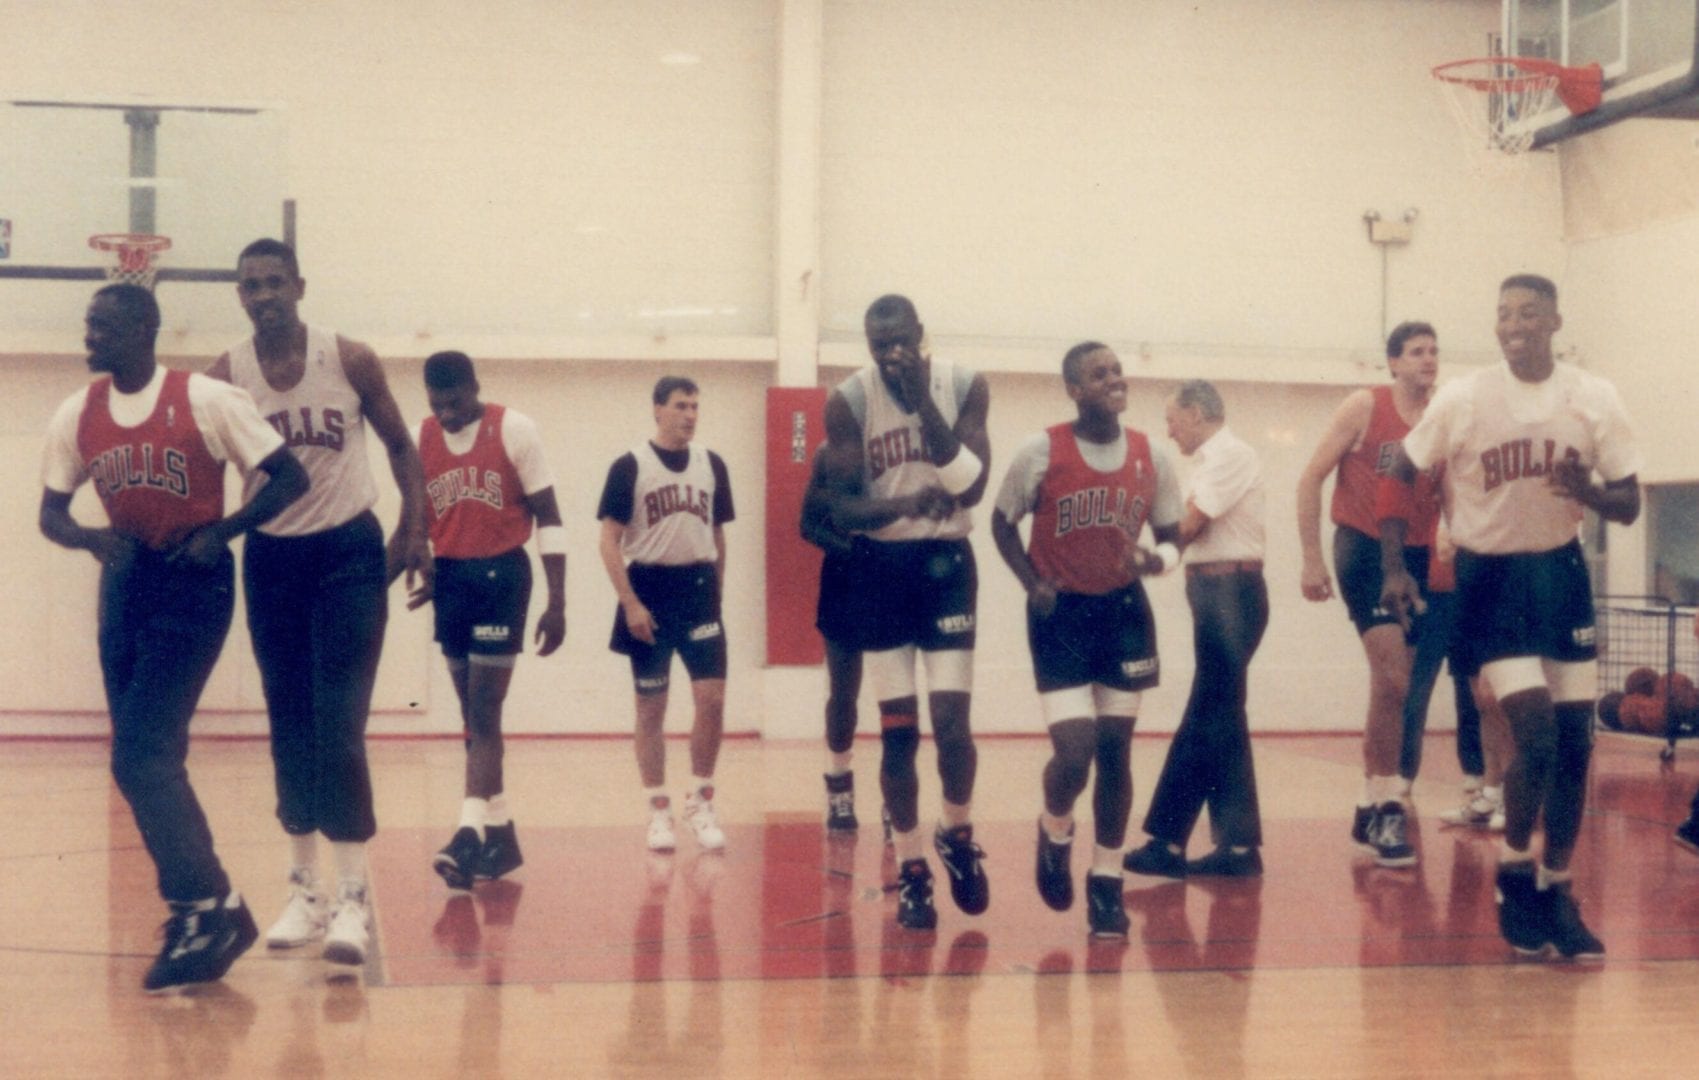 Chicago Bulls team during practice